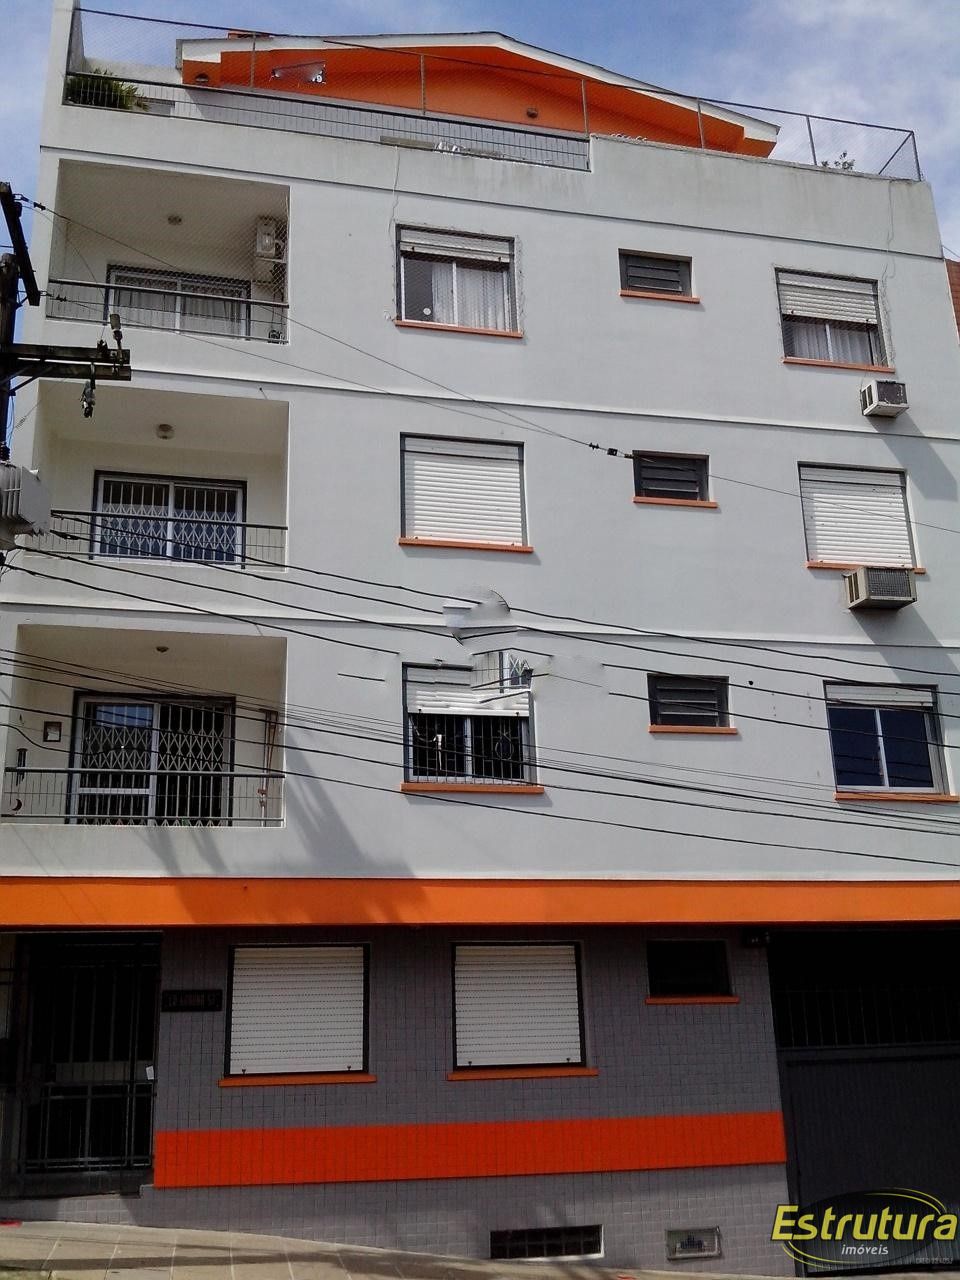 Cobertura com 3 Dormitórios à venda, 160 m² por R$ 540.000,00